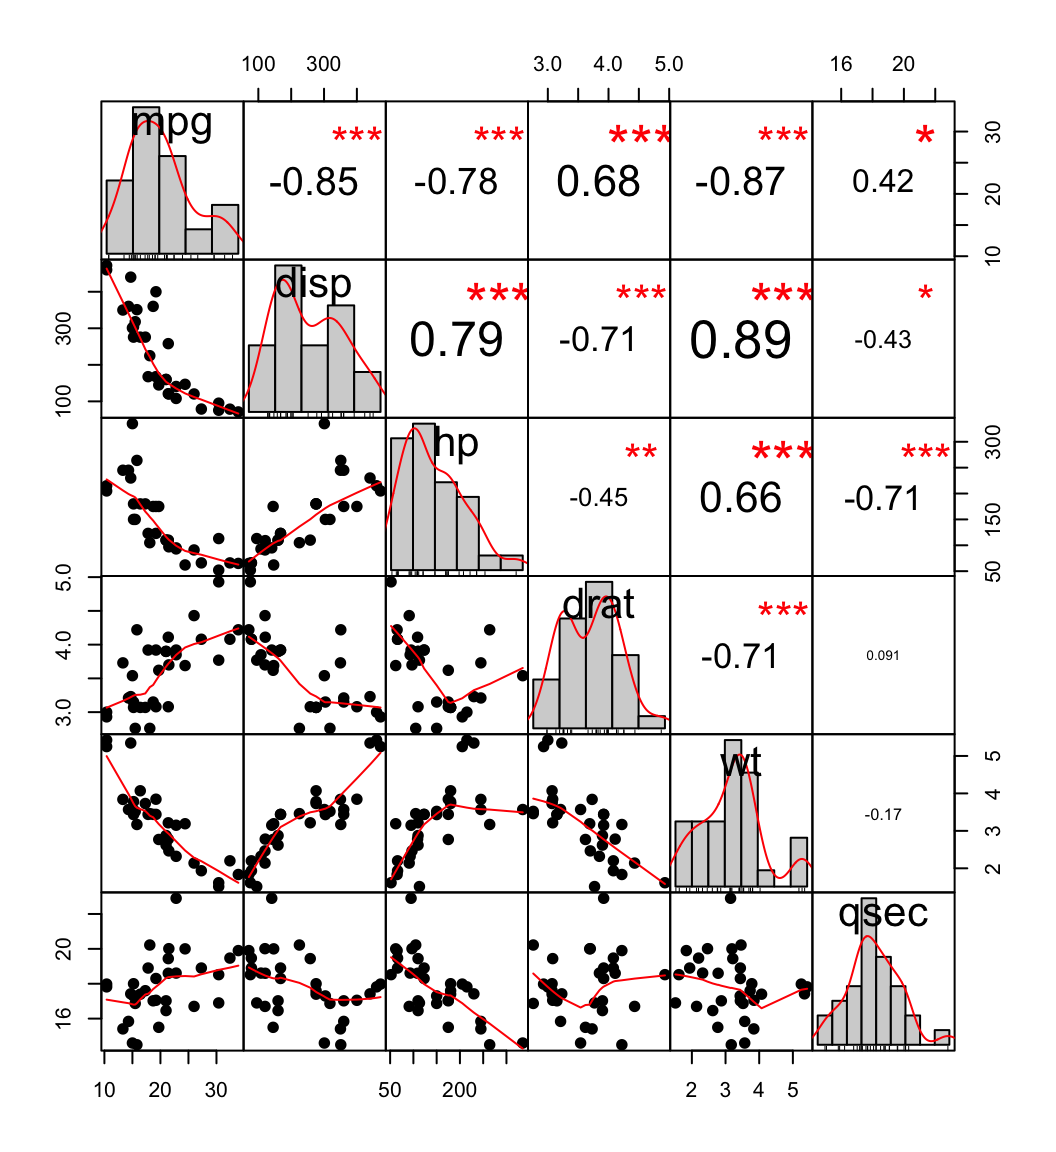 Nuages de points et matrice de corrélation